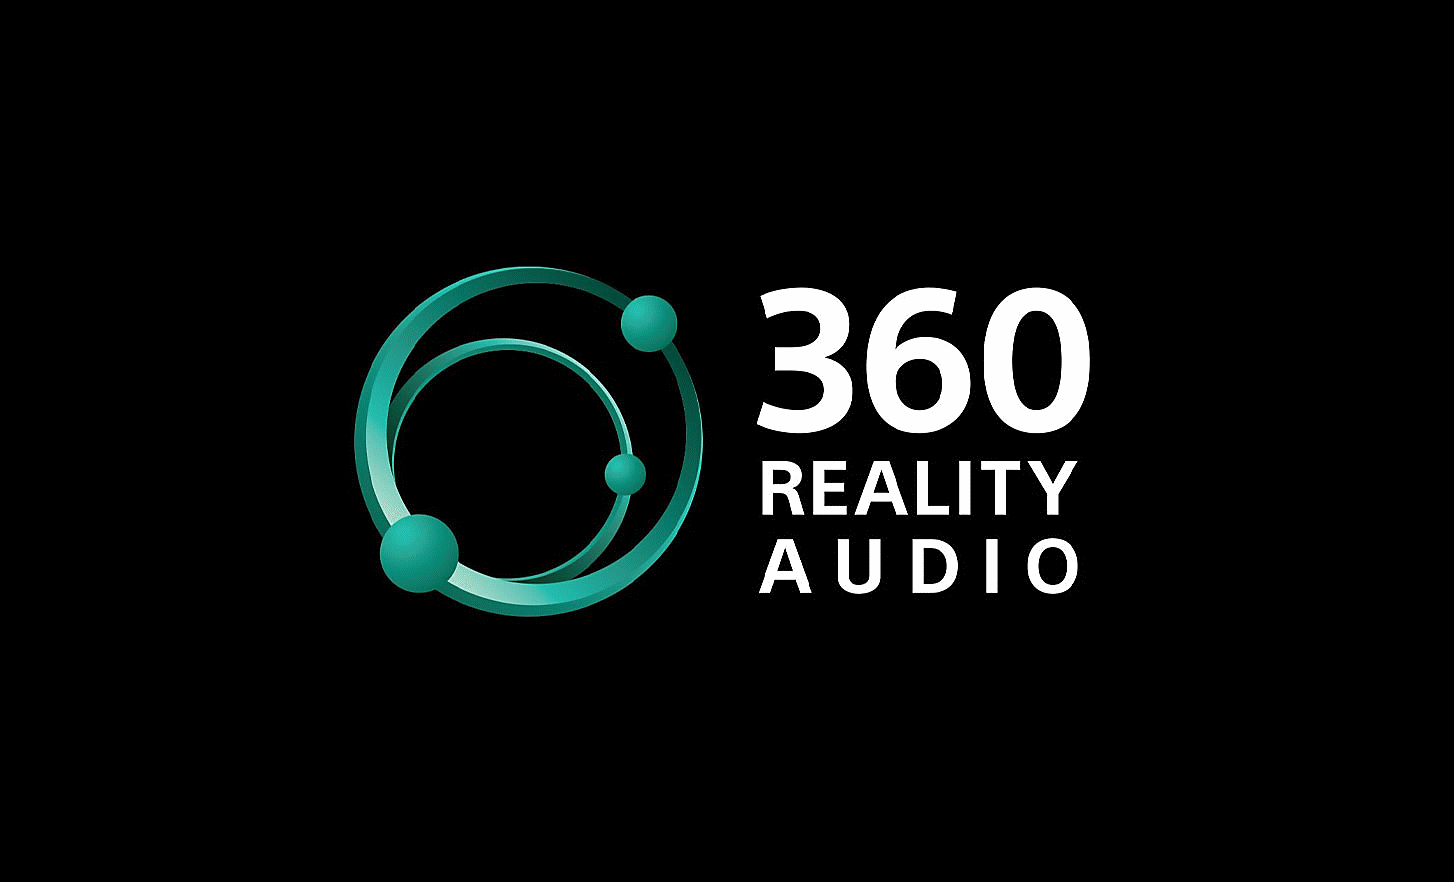 Imagem dos benefícios do 360 Reality Audio.